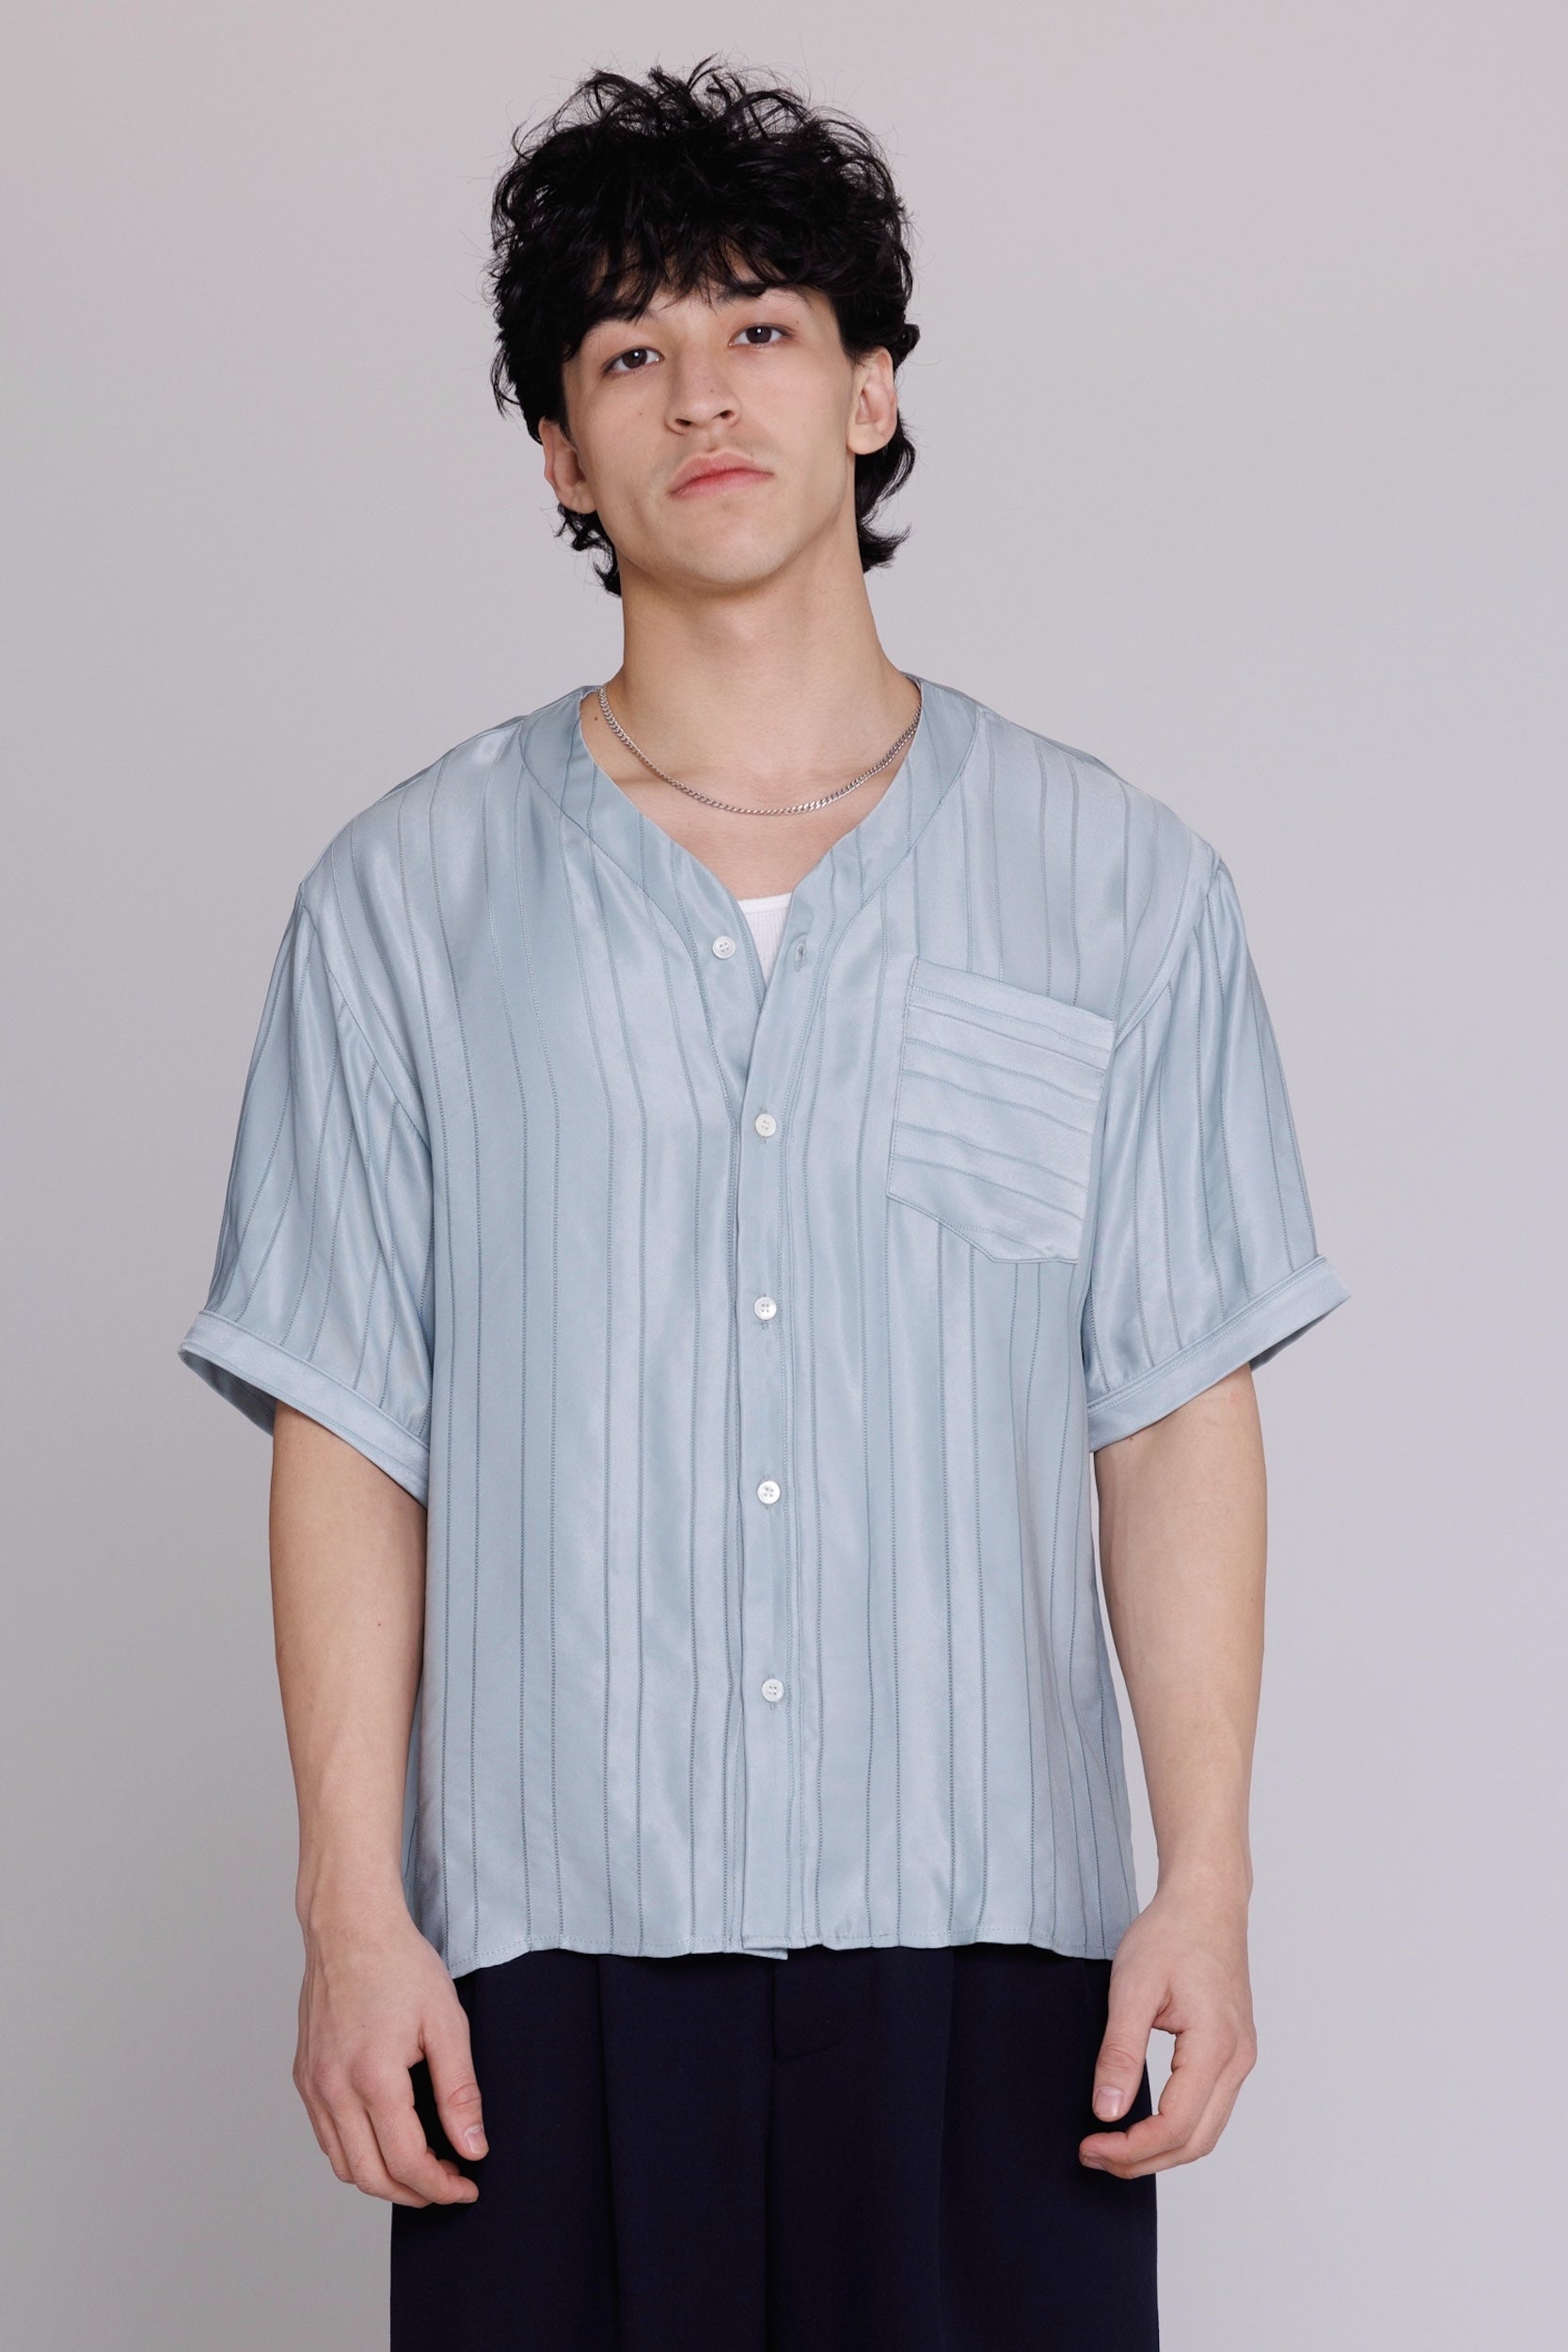 "Valenzuela" Baseball Collar Shirt in Blue Satin Stripe